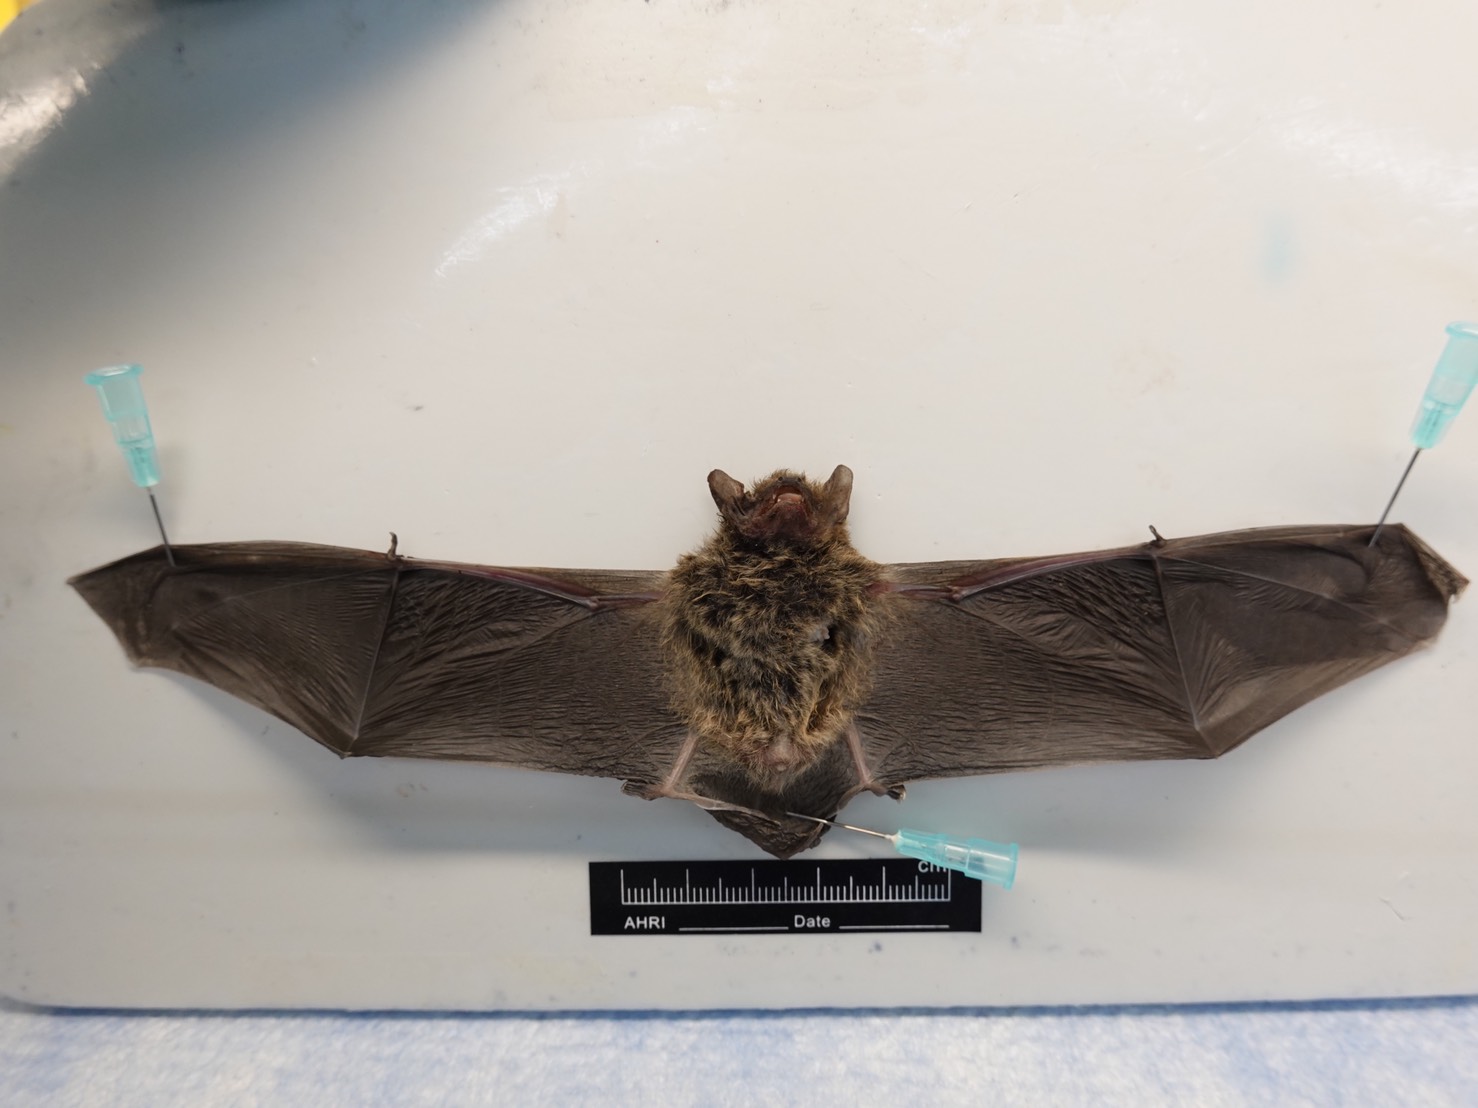 莊孝維？世衛調查團成員稱武漢實驗室沒飼養蝙蝠 澳媒公布影片打臉